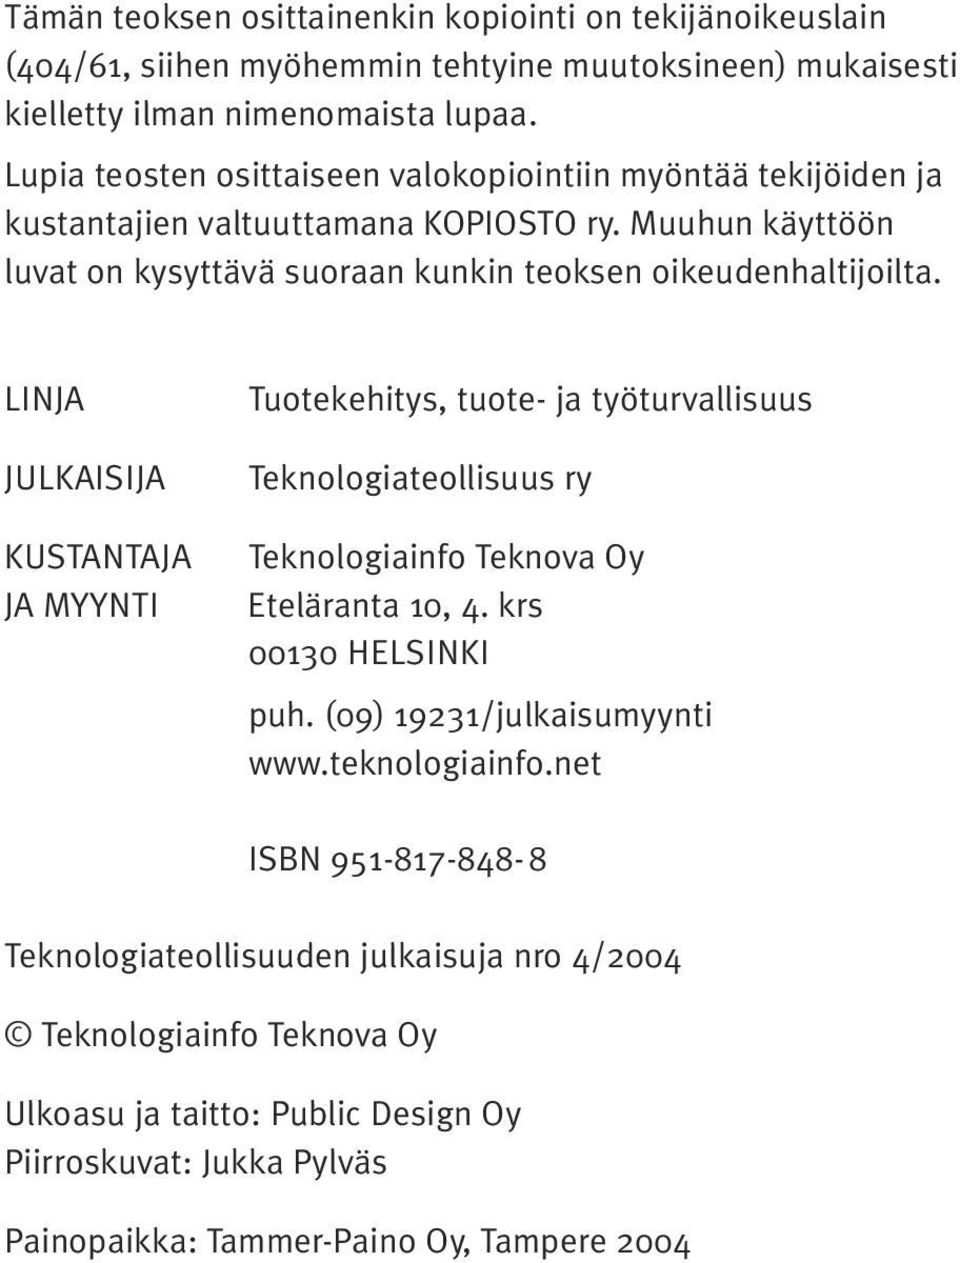 LINJA JULKAISIJA KUSTANTAJA JA MYYNTI Tuotekehitys, tuote- ja työturvallisuus Teknologiateollisuus ry Teknologiainfo Teknova Oy Eteläranta 10, 4. krs 00130 HELSINKI puh.